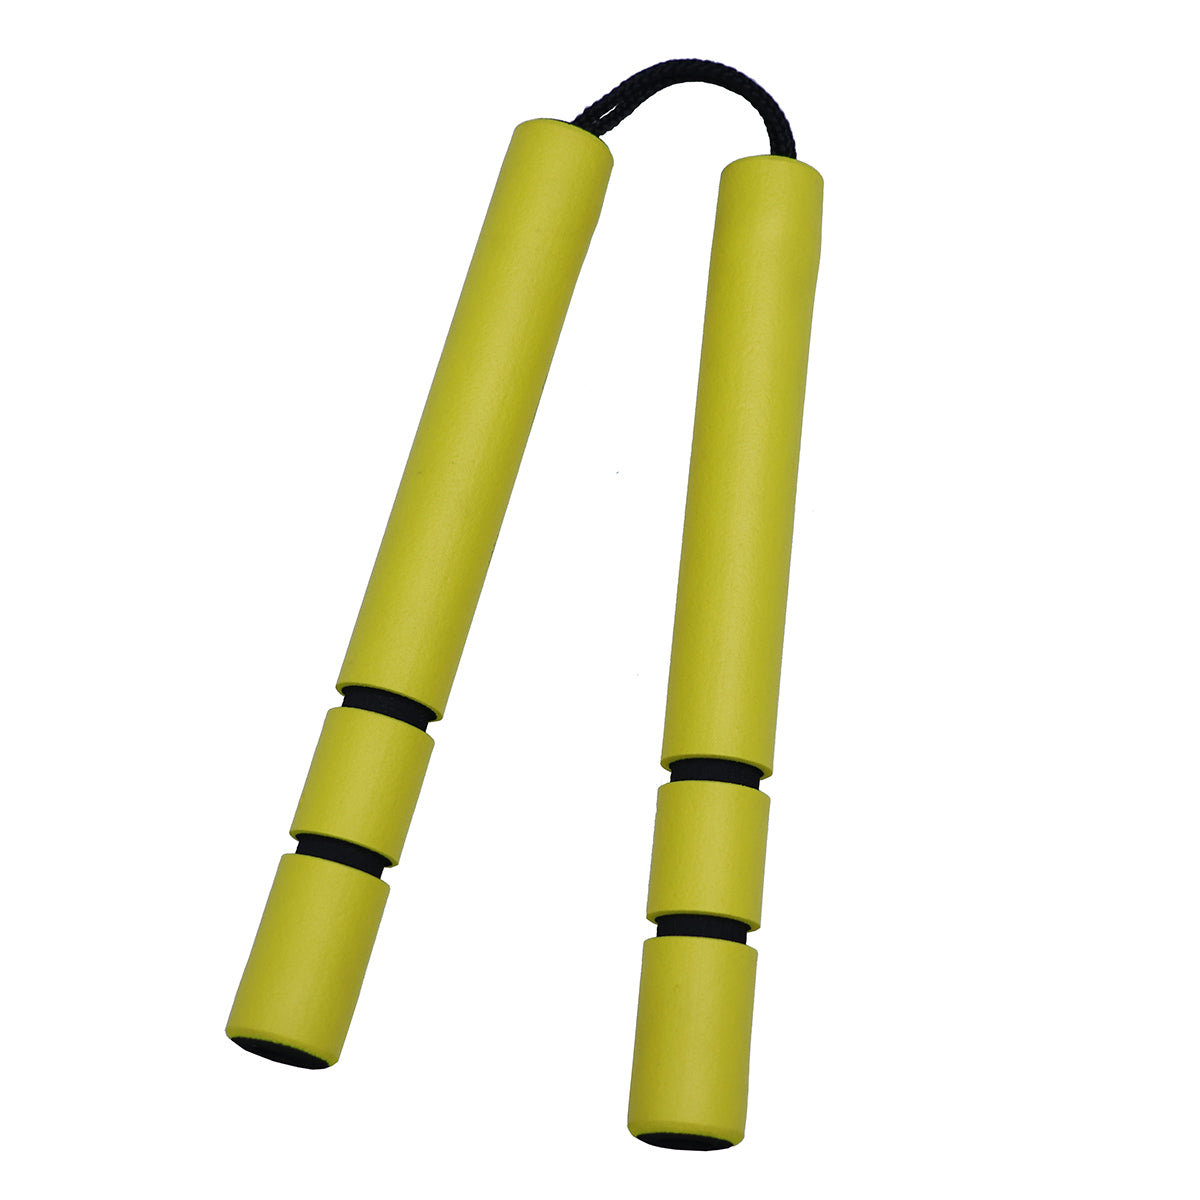 NR-028: Foam Nunchaku Cord With Grip : Yellow grips  ( E129)